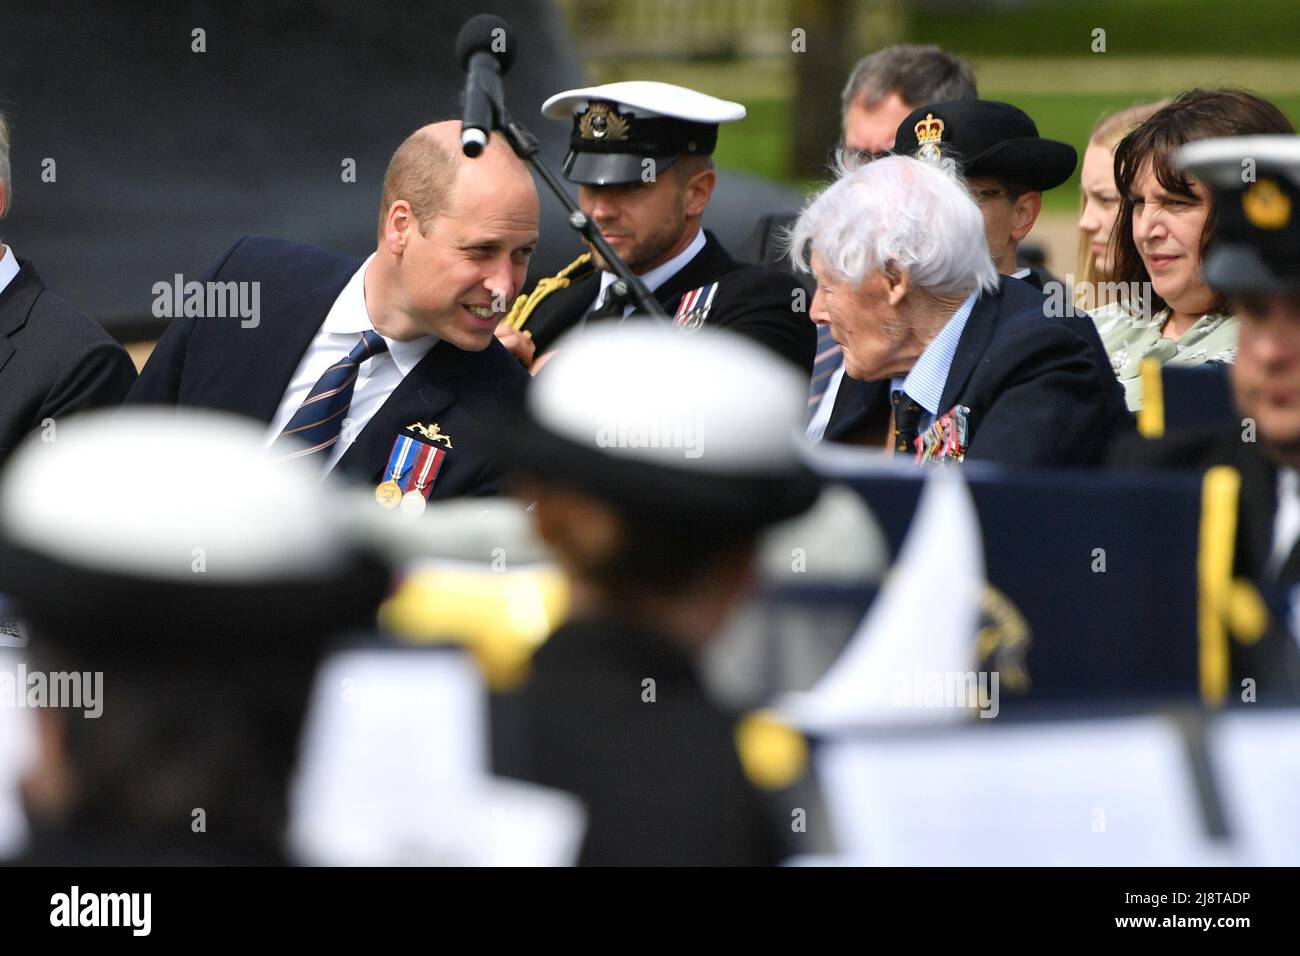 El Duque de Cambridge habla con Michael Tibbs durante la inauguración de un monumento conmemorativo a los submarinos en el Arboreto National Memorial en Staffordshire. Fecha de la foto: Miércoles 18 de mayo de 2022. Foto de stock